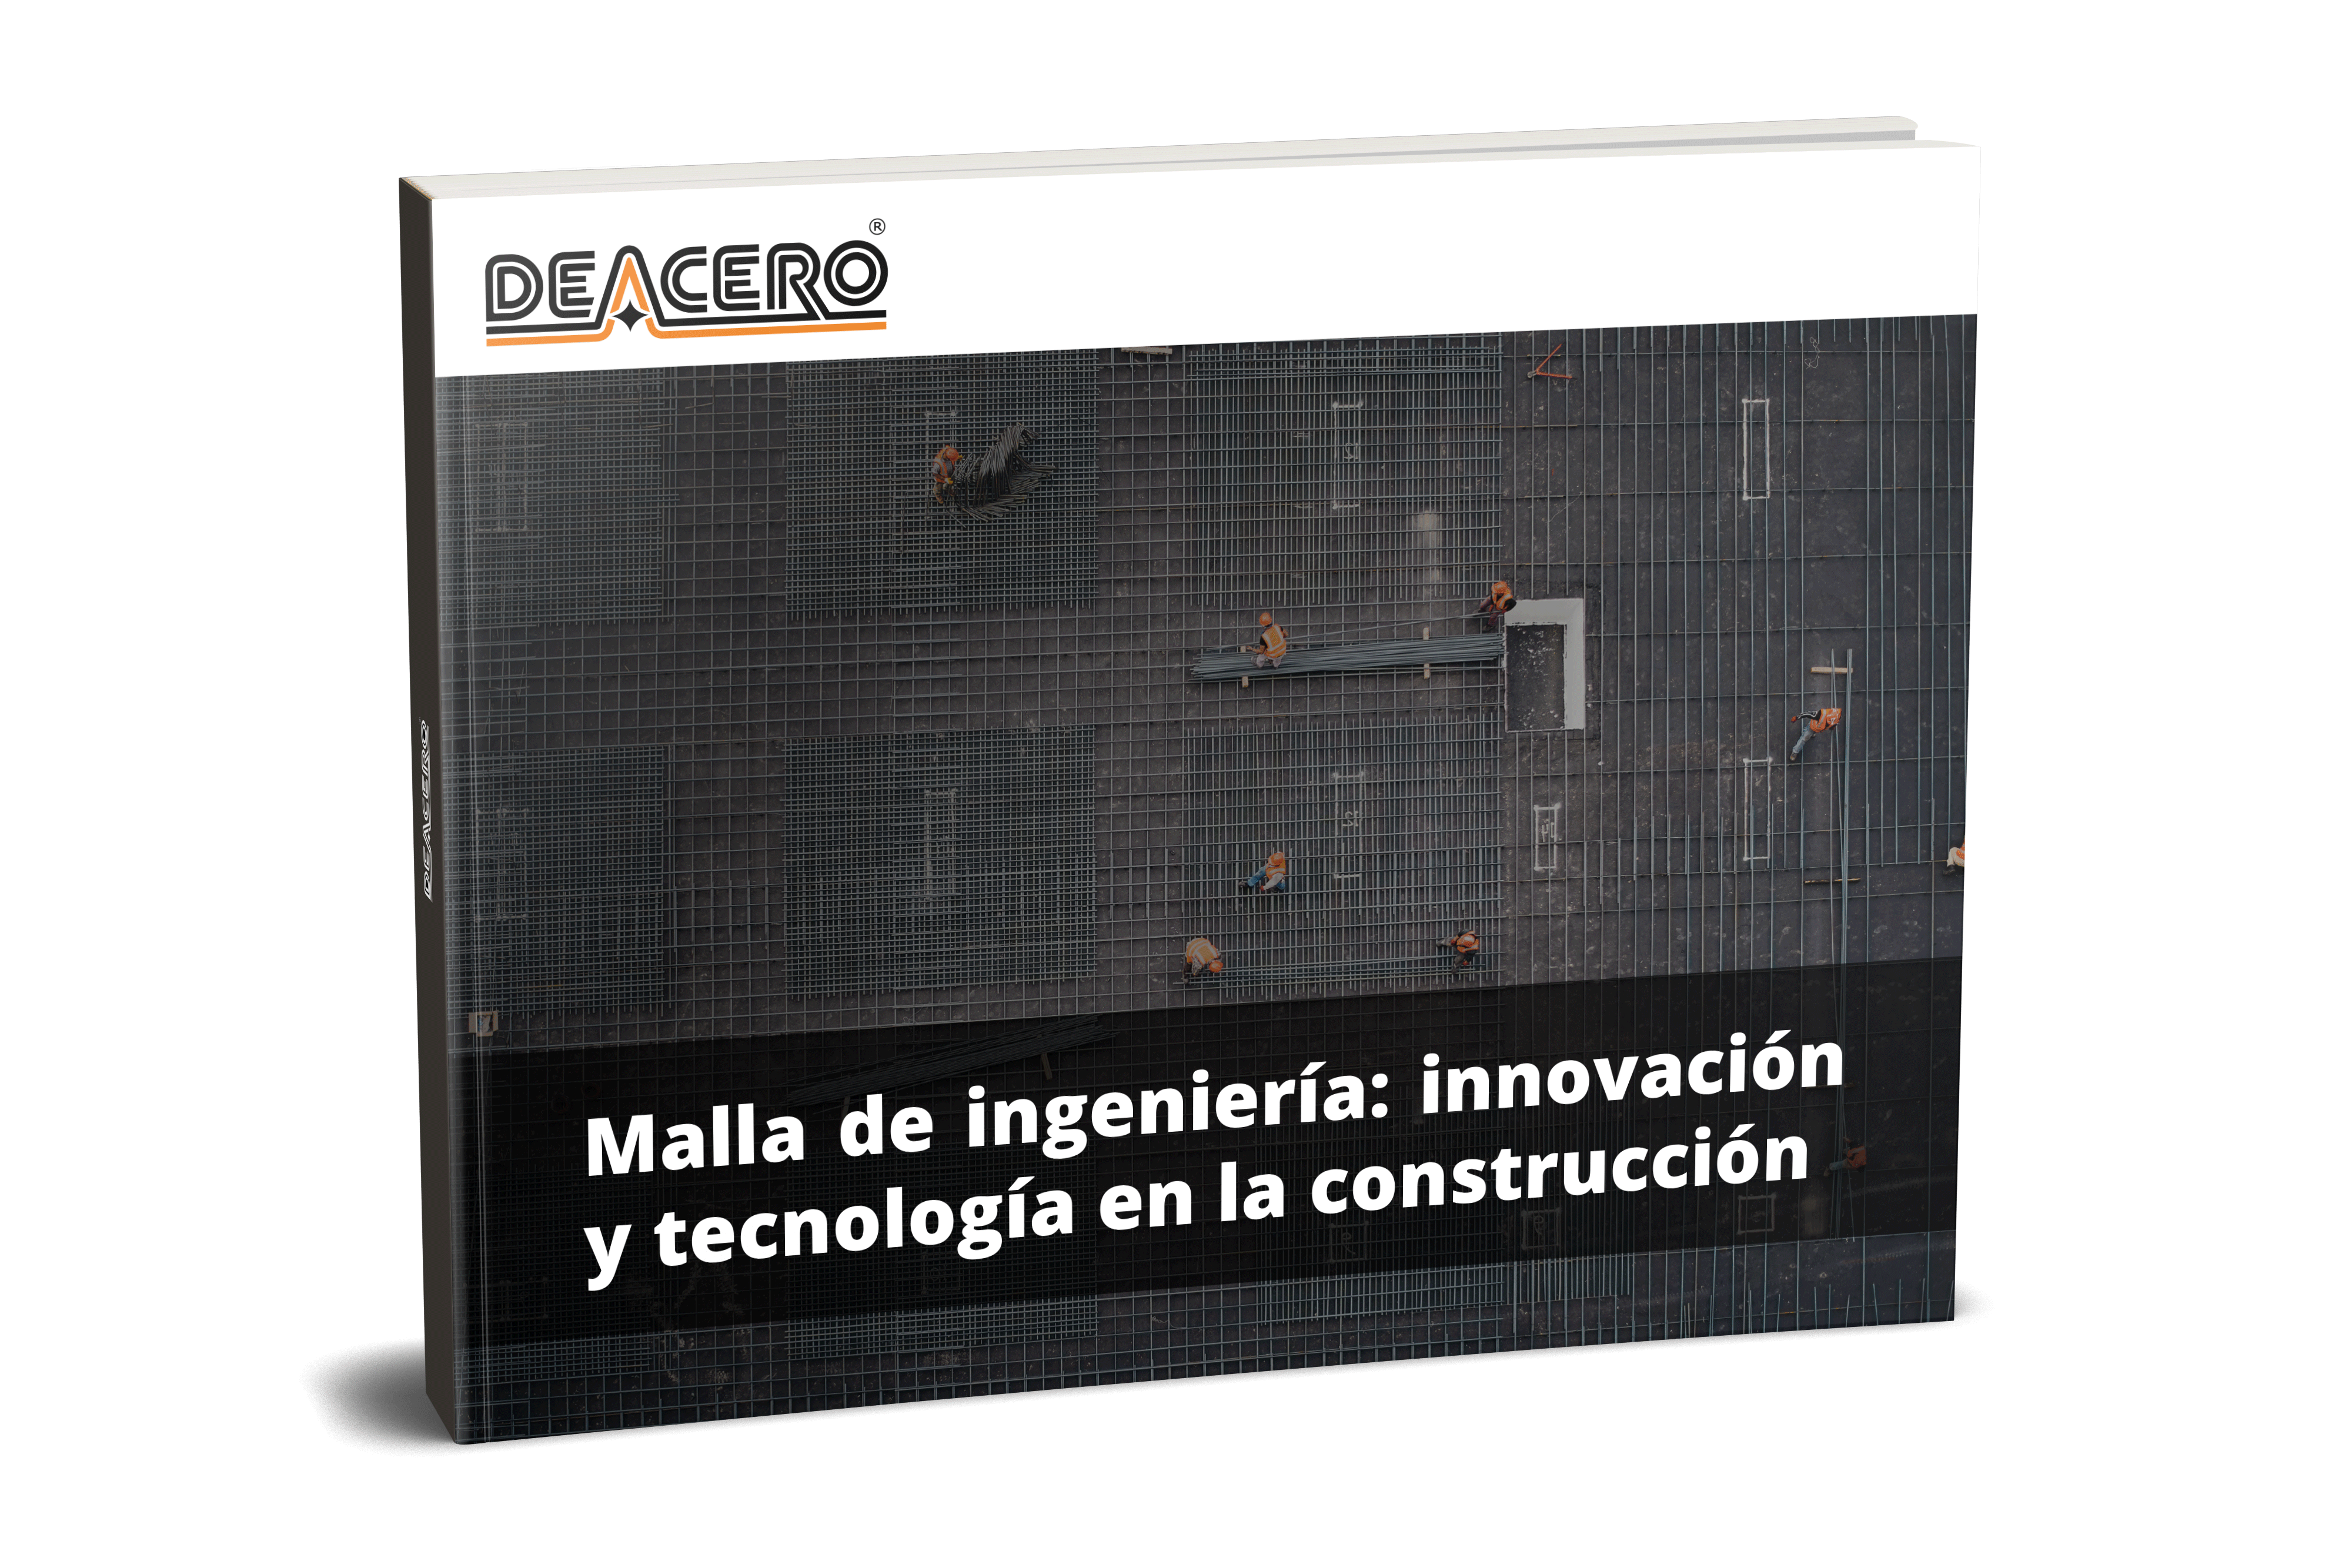 malla-de-ingenieria-innovacion-y-tecnologia-en-la-construccion_deaceromockup2